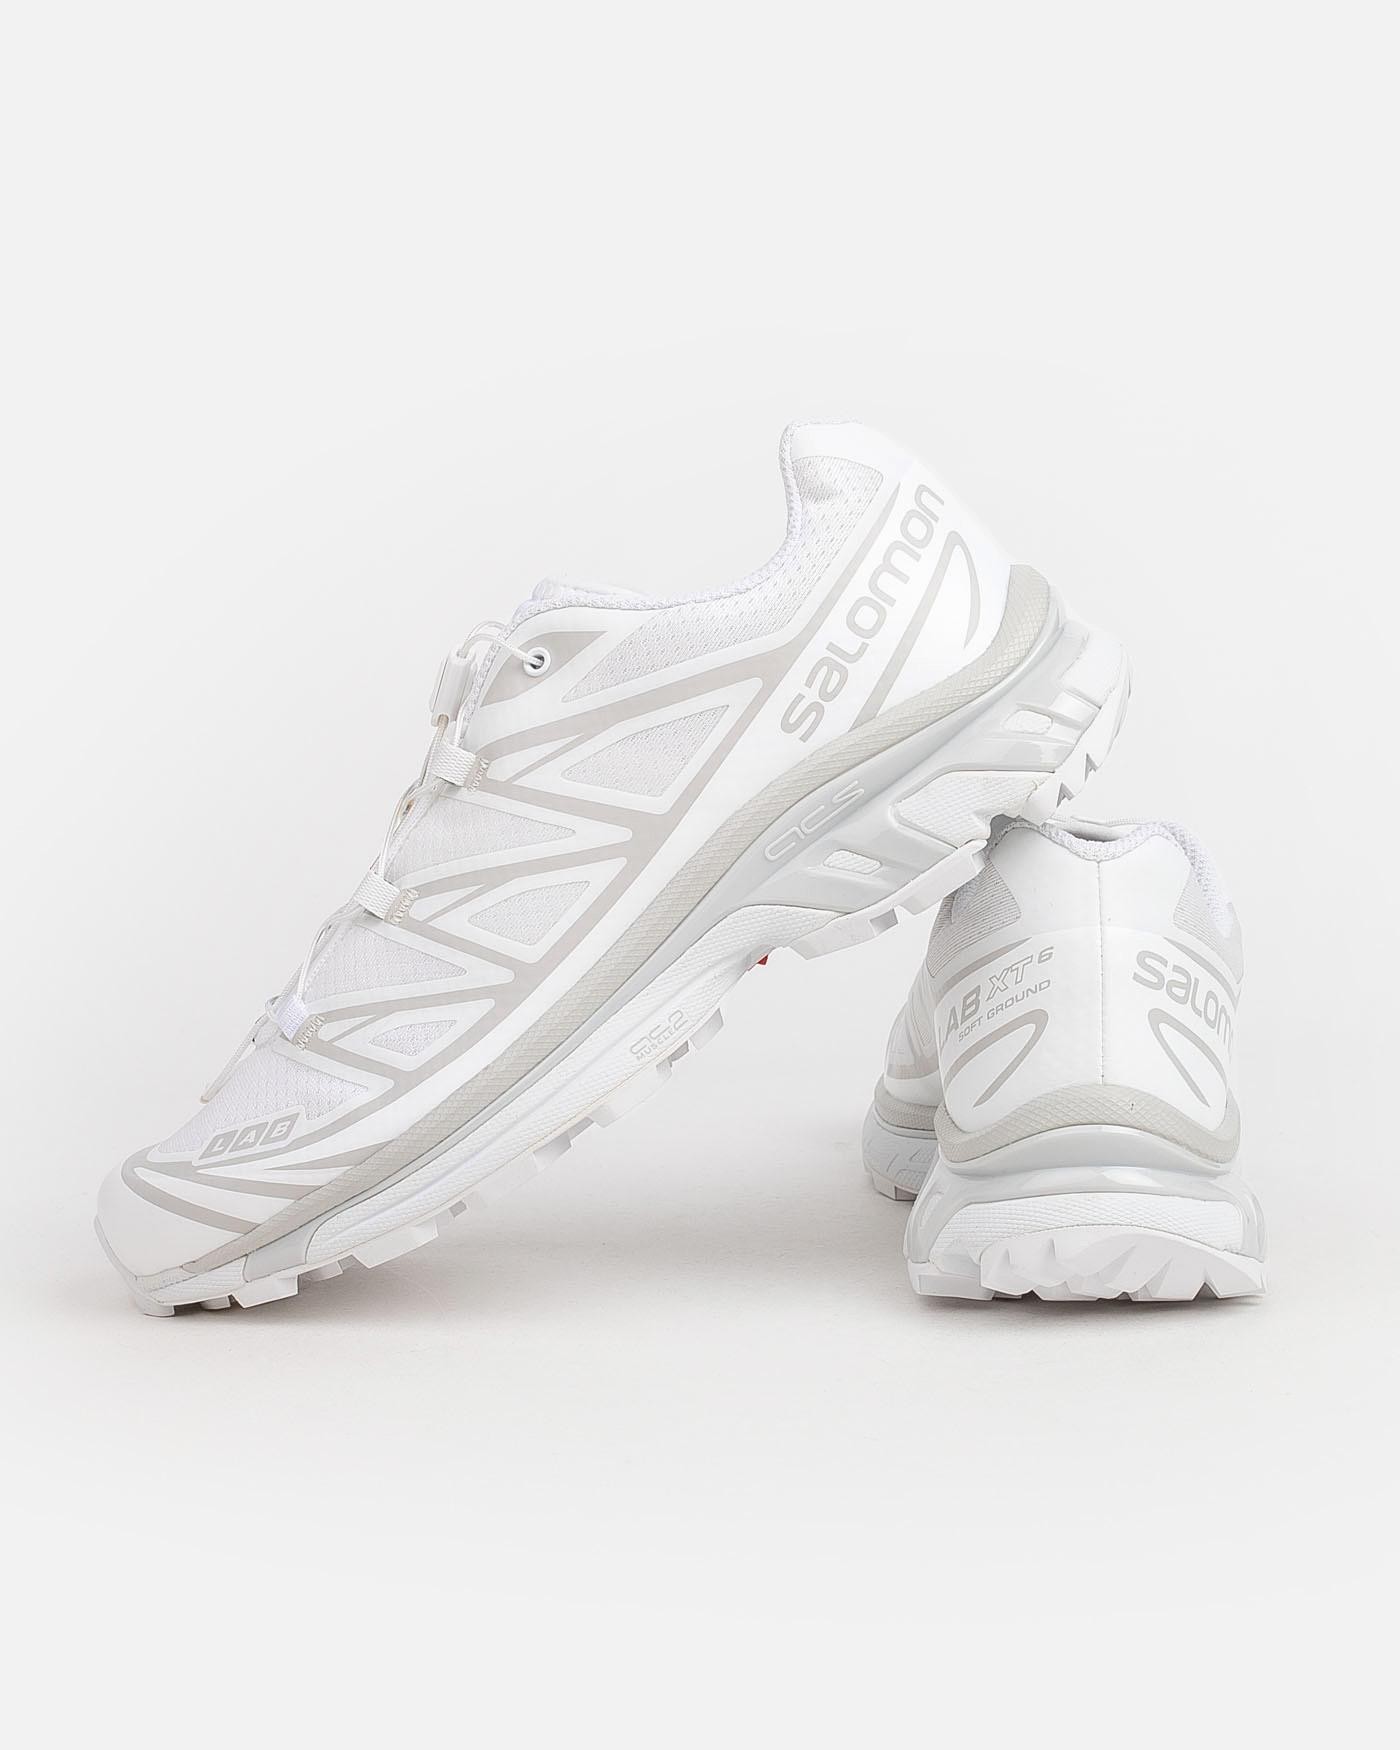 salomon-zapatillas-xt-6-lunar-rock-sneakers-white-blancas-5